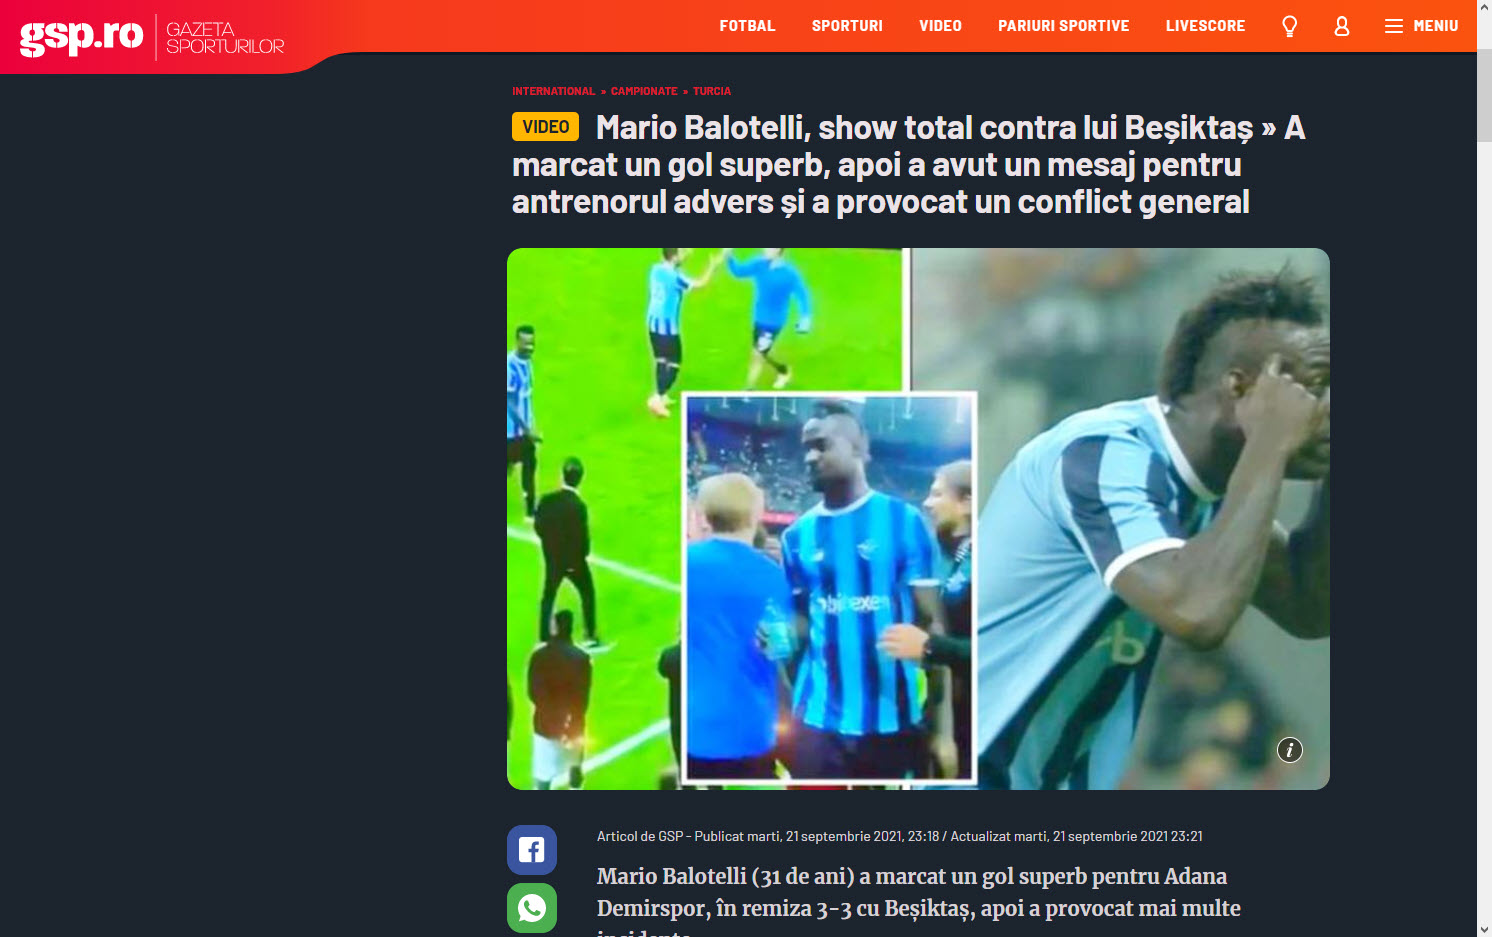 Mario Balotelli’nin hareketi dış basında büyük yankı uyandırdı! 8 yıl sonra intikamını aldı